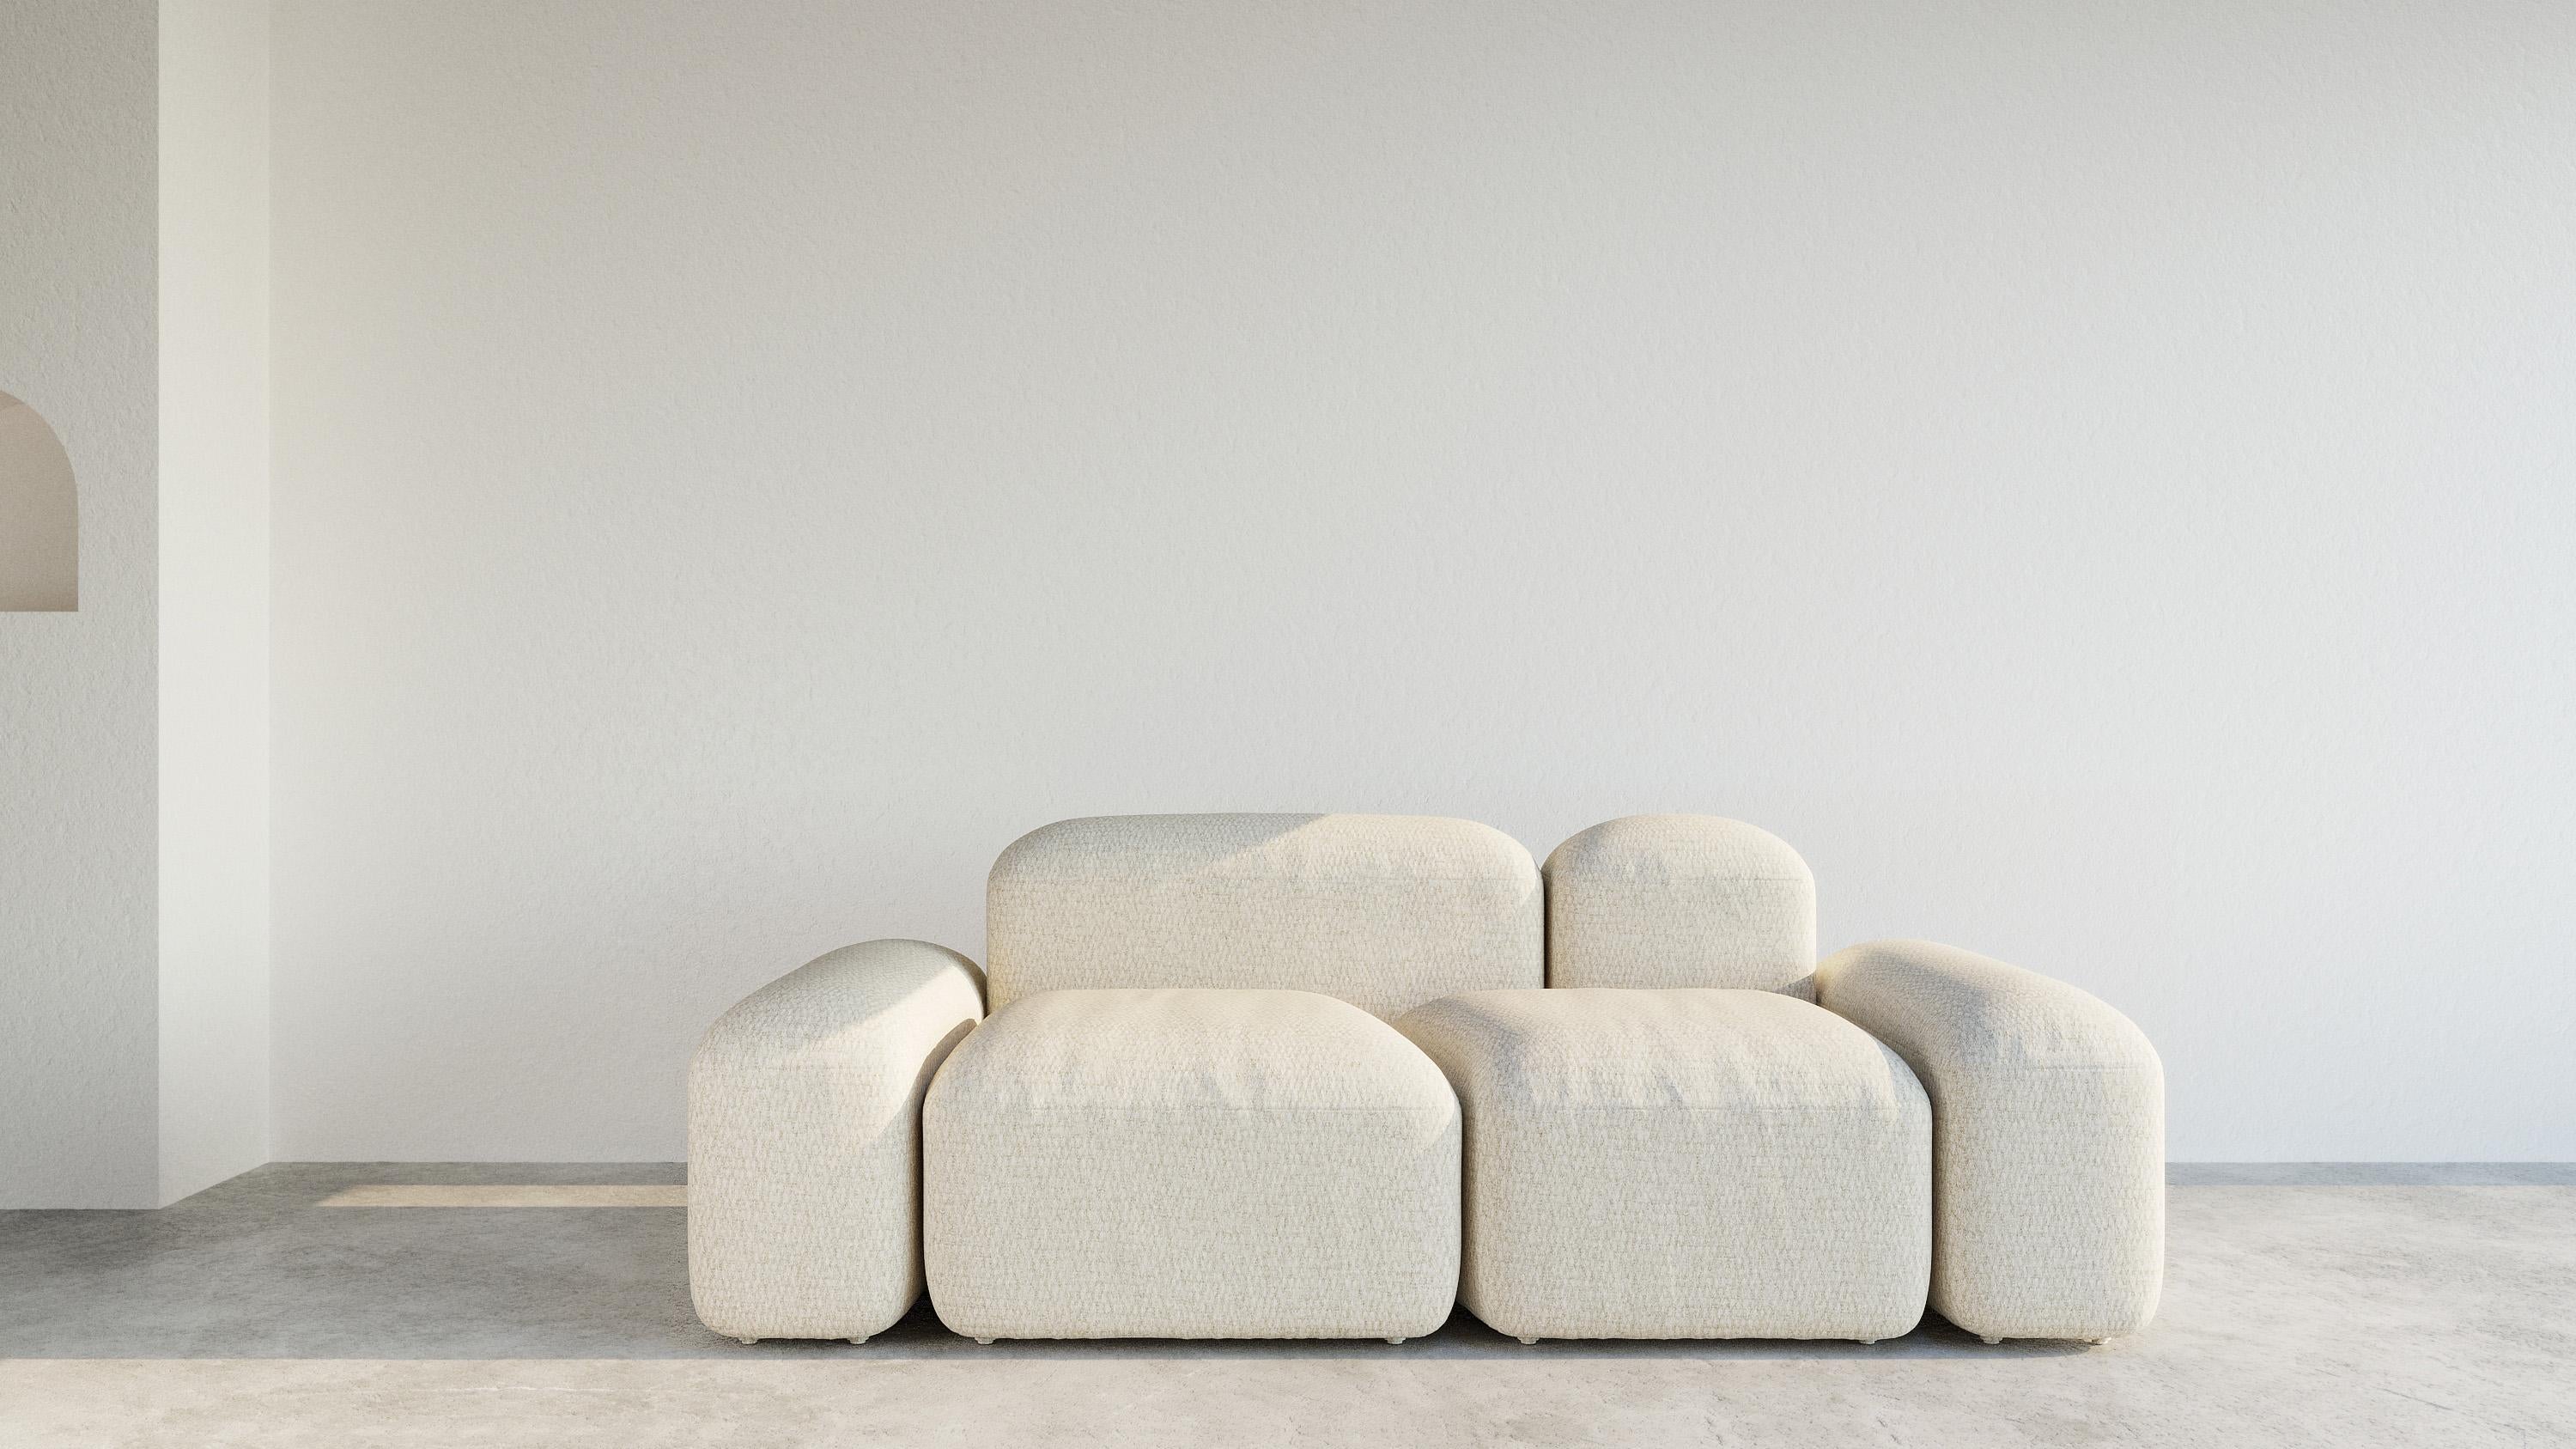 'Lapis' est une collection de canapés et de sièges aux formes très organiques et minimalistes.
Concepteur : Emanuel Gargano
Fabricant : Amura Lab

LAPIS 045
2 places / I.L.A. 203cm

Lapis' peut être fabriqué en plusieurs dimensions et combinaisons,